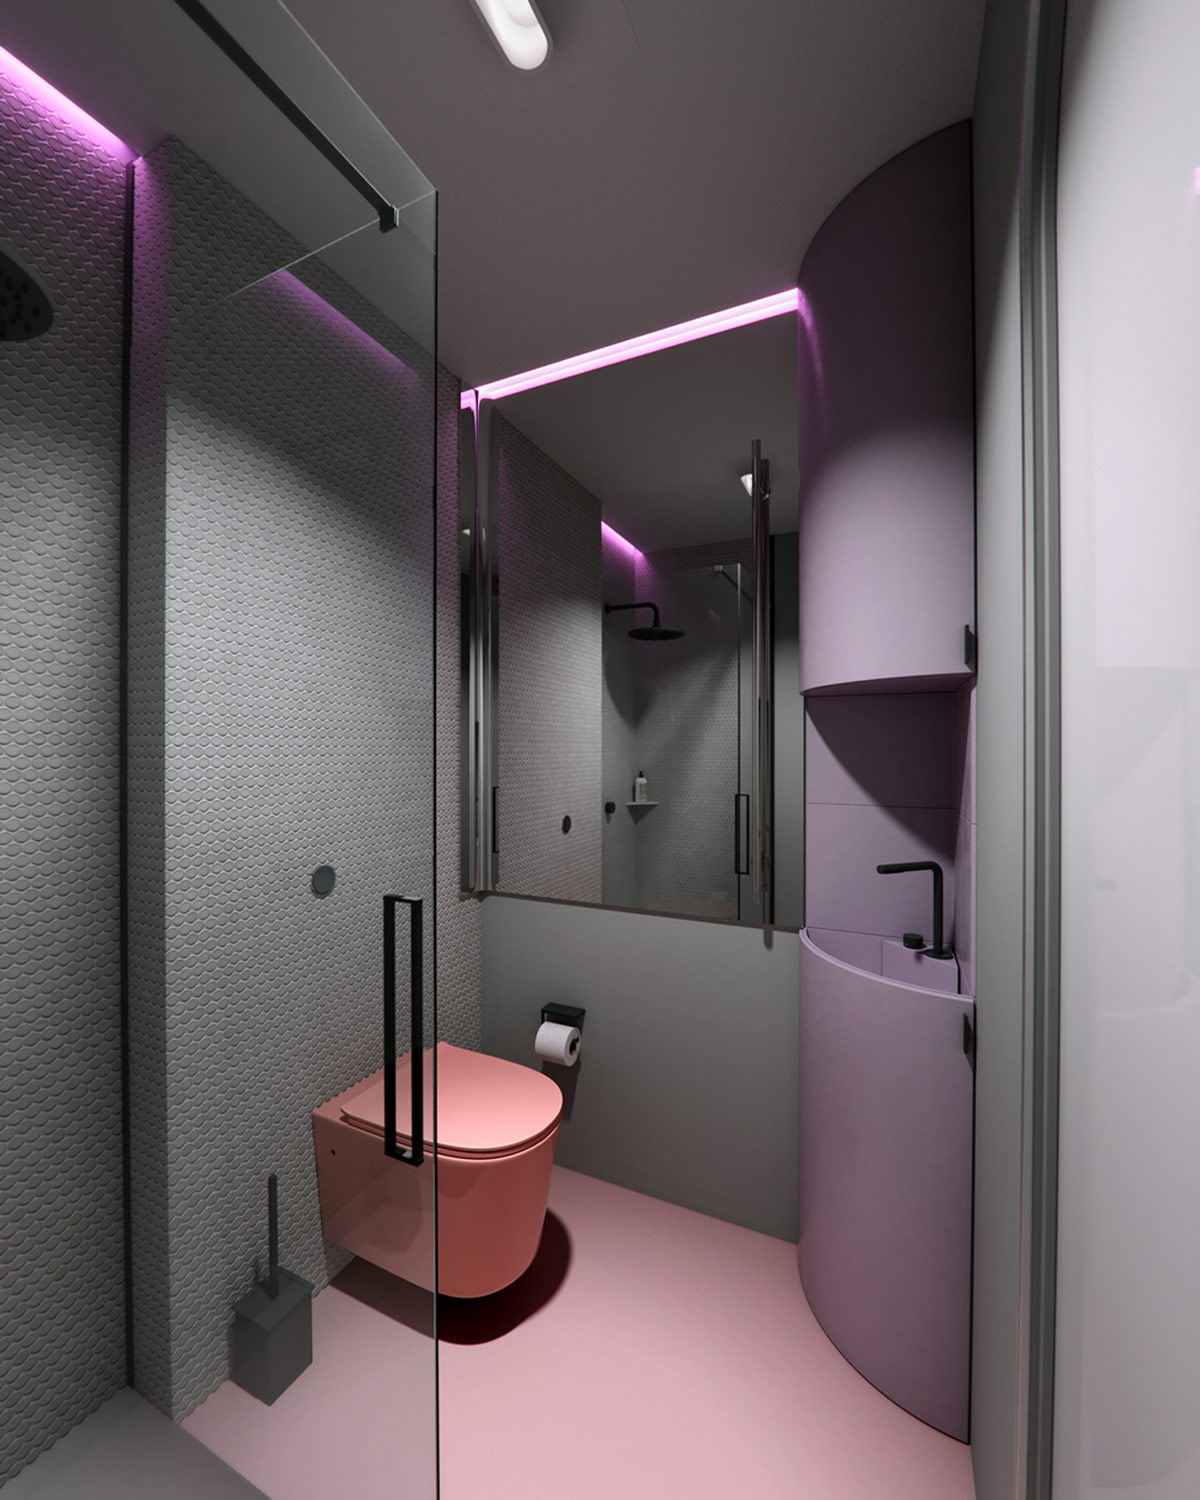 hình ảnh phòng tắm nhỏ với bồn cầu màu hồng, bồn rửa và tủ đồ màu tím, đèn LED âm trần